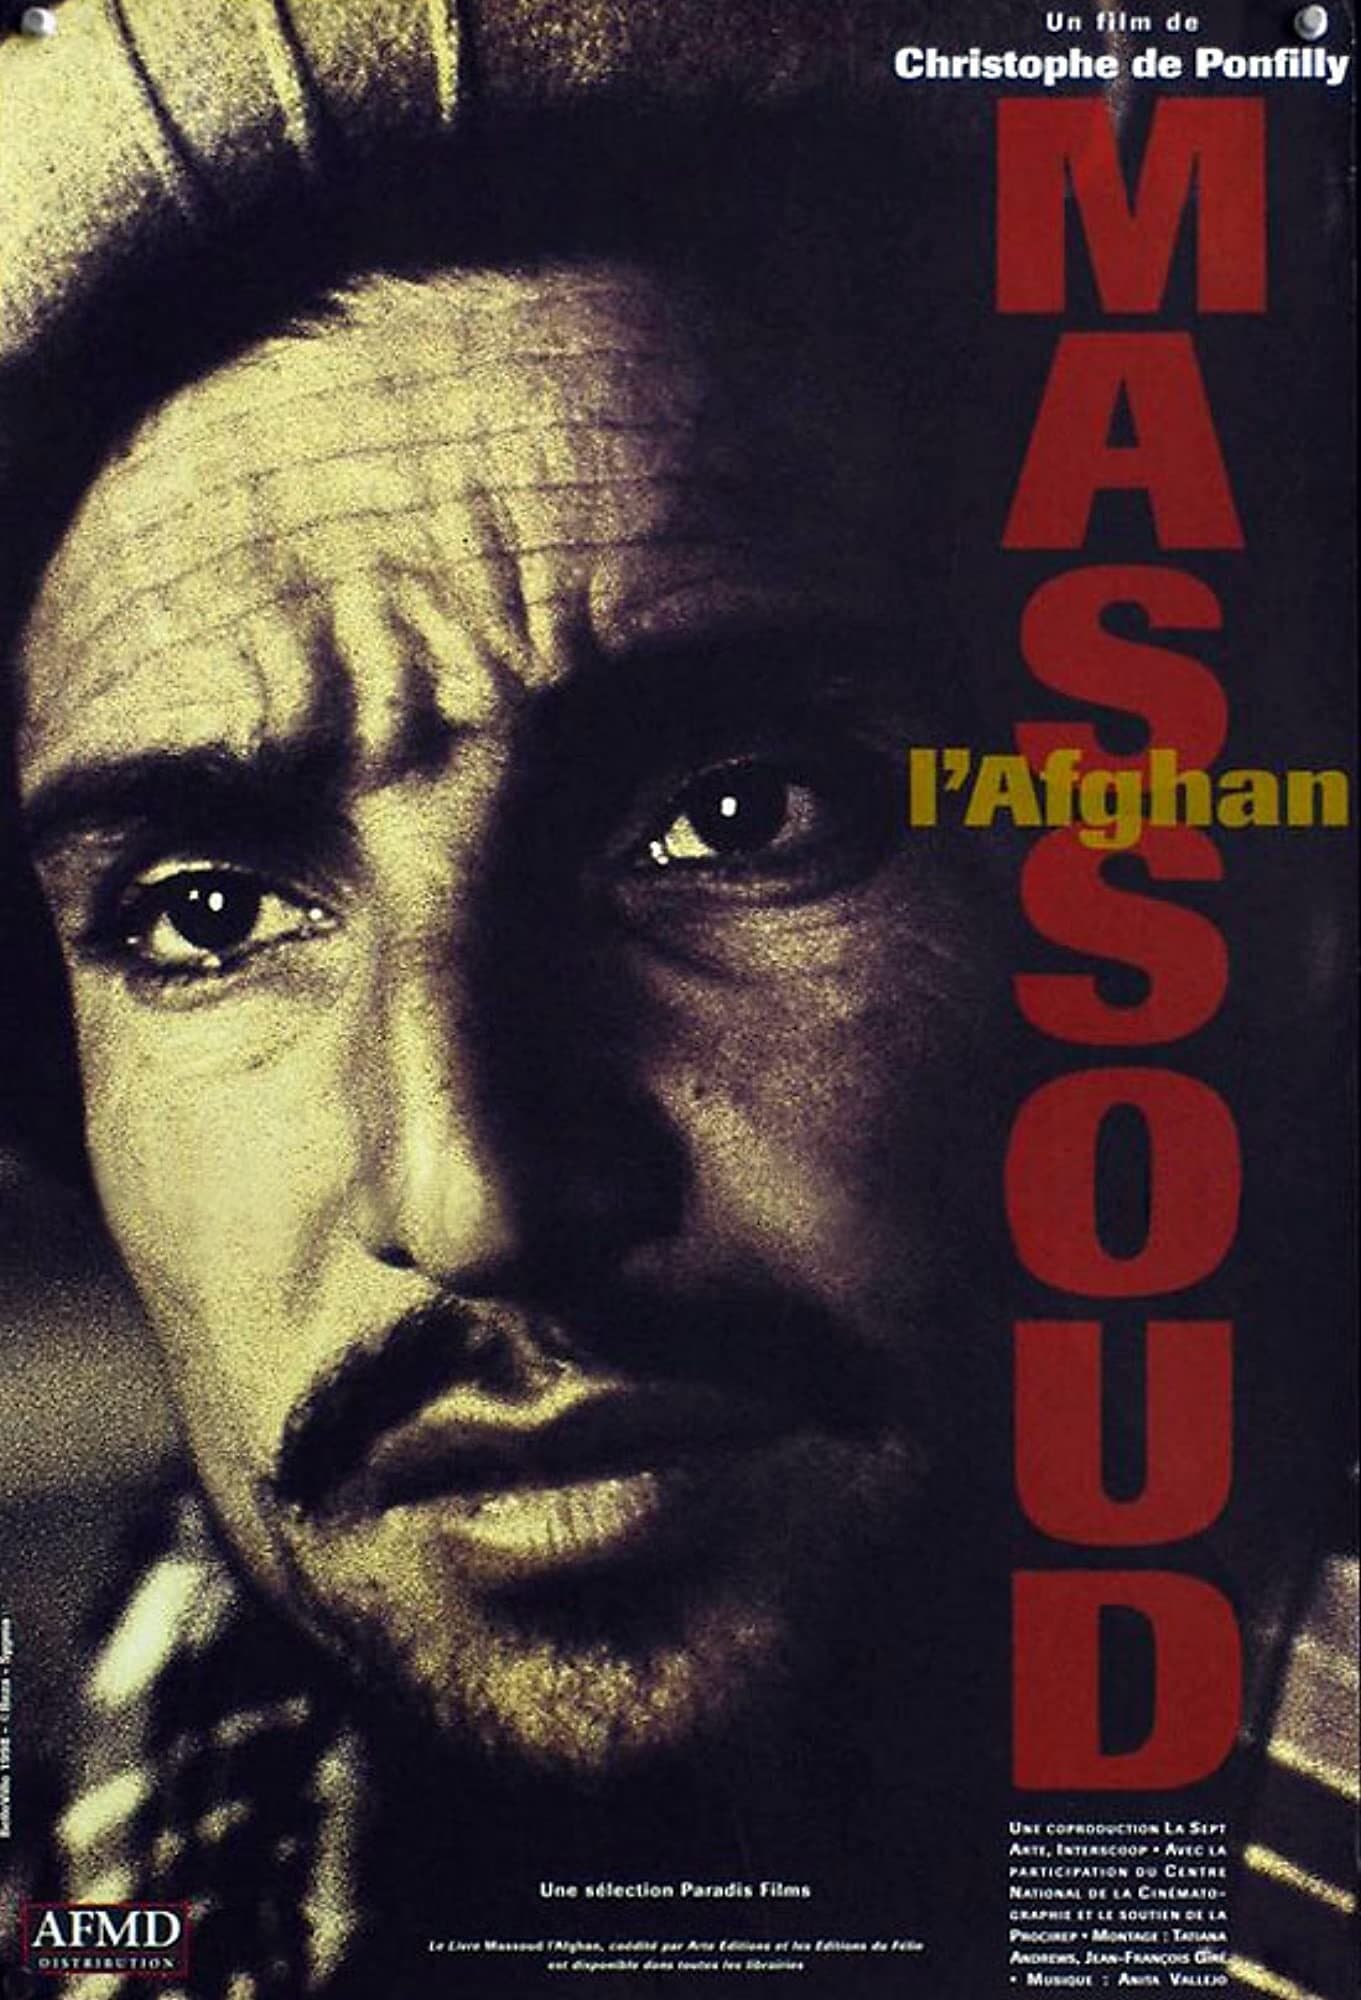 Massoud the Afghan